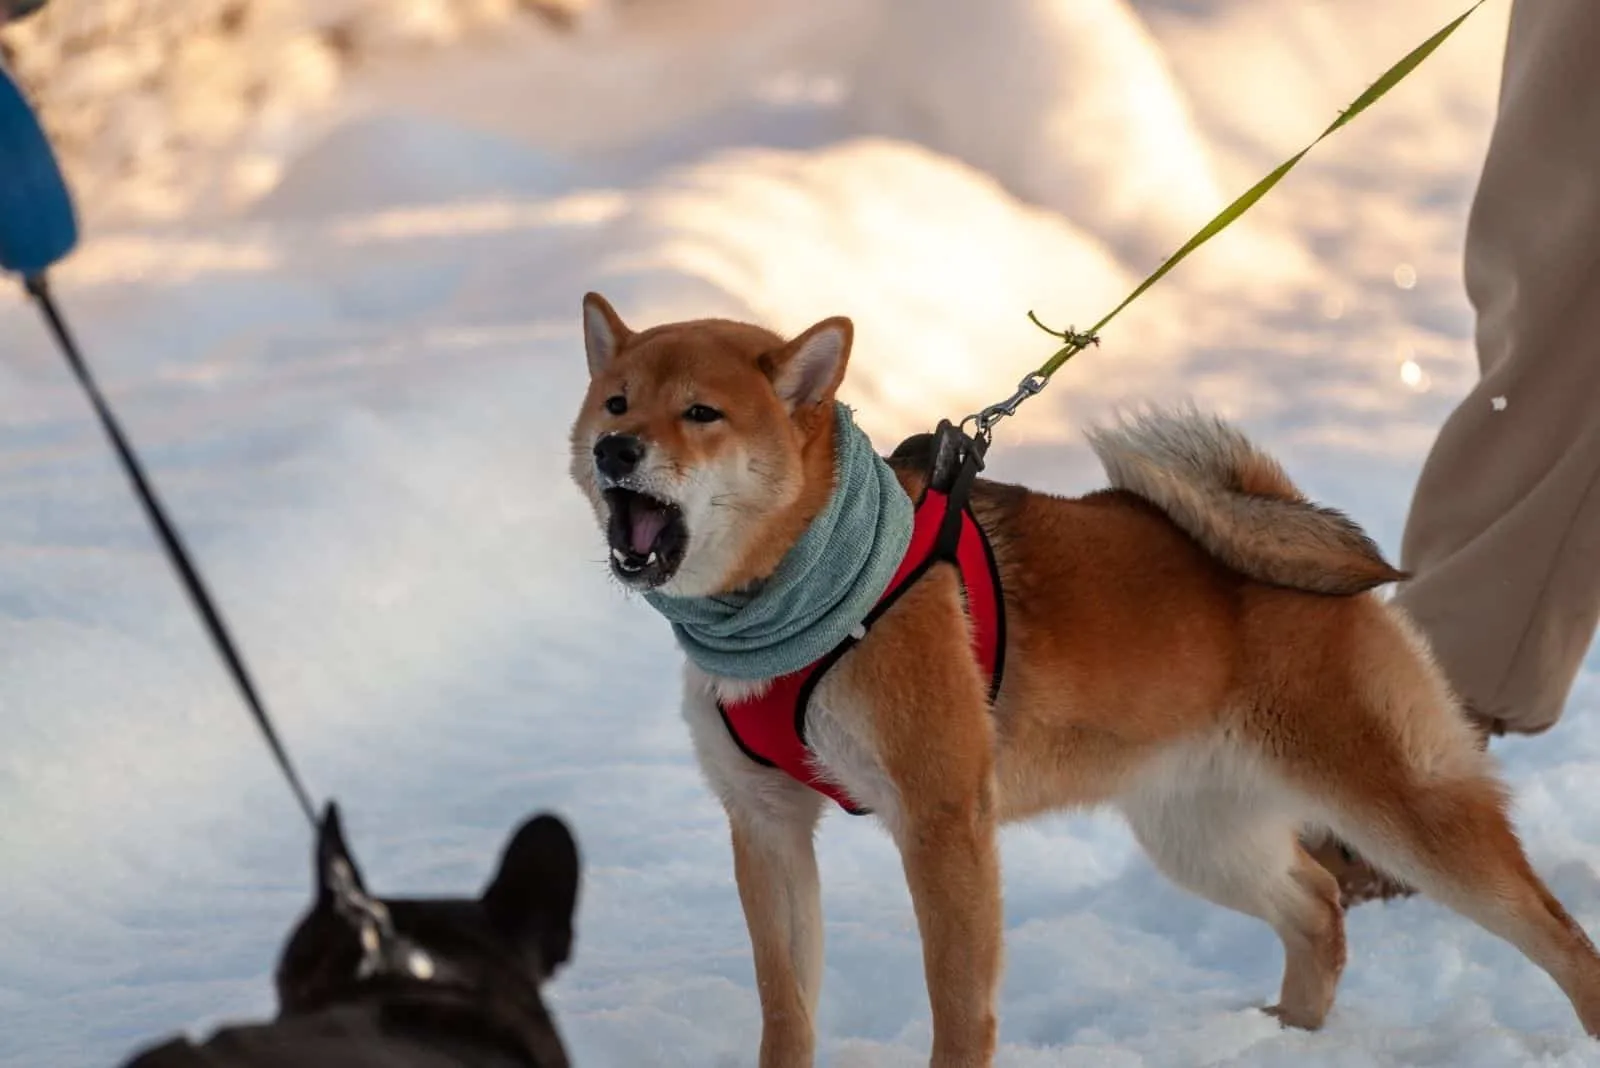 young shiba inu barking menacingly at a dog in the snow